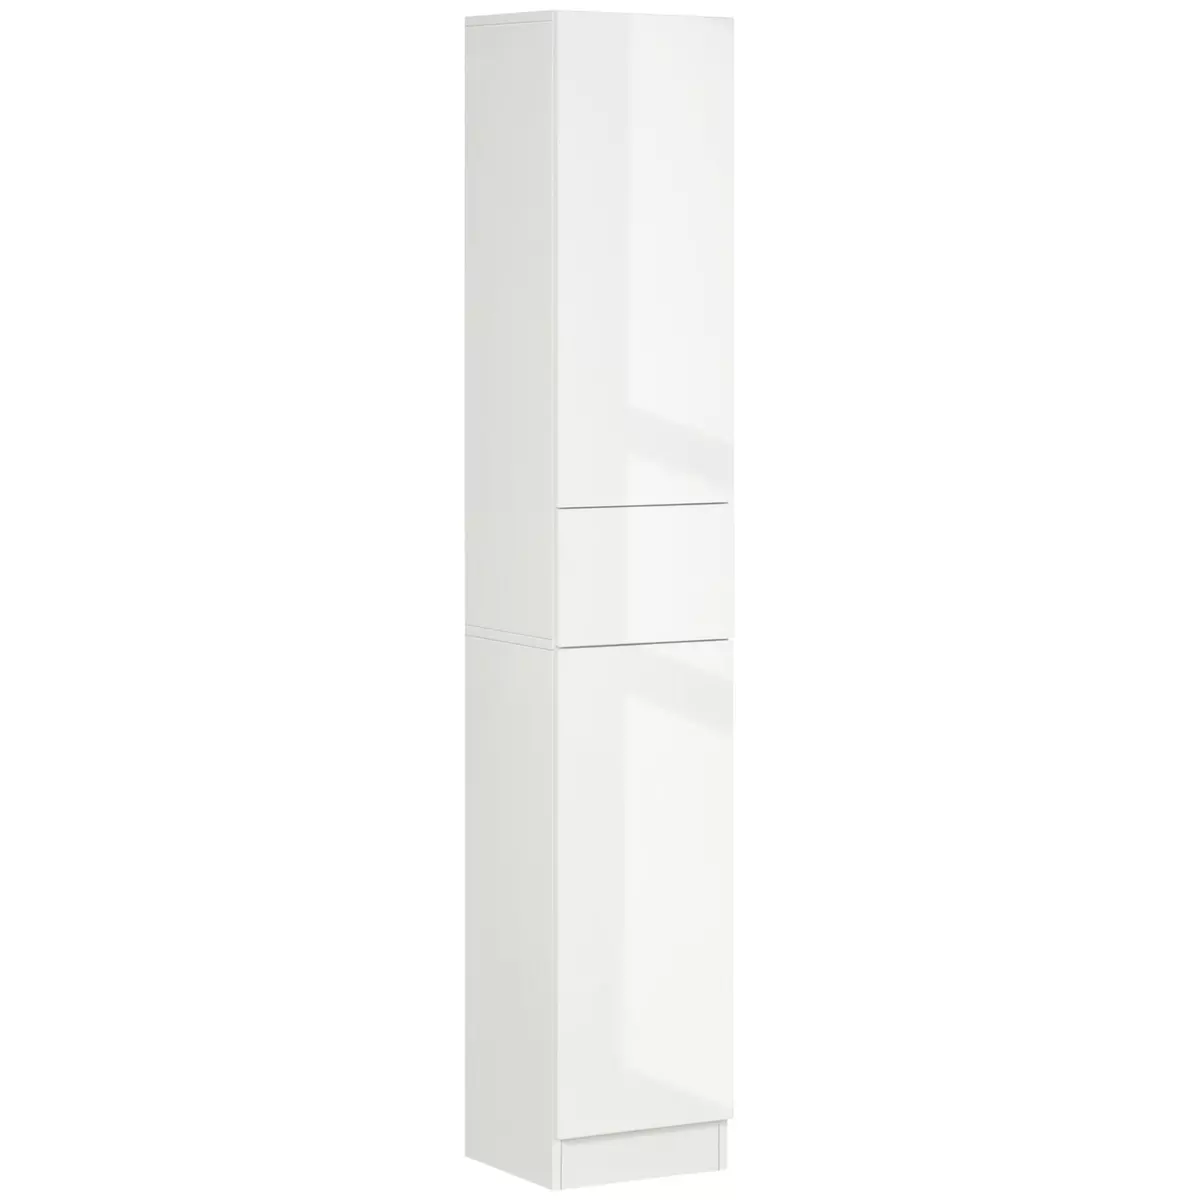 KLEANKIN Meuble colonne rangement salle de bain style contemporain façade laquée 2 portes 3 étagères tiroir panneaux MDF blanc